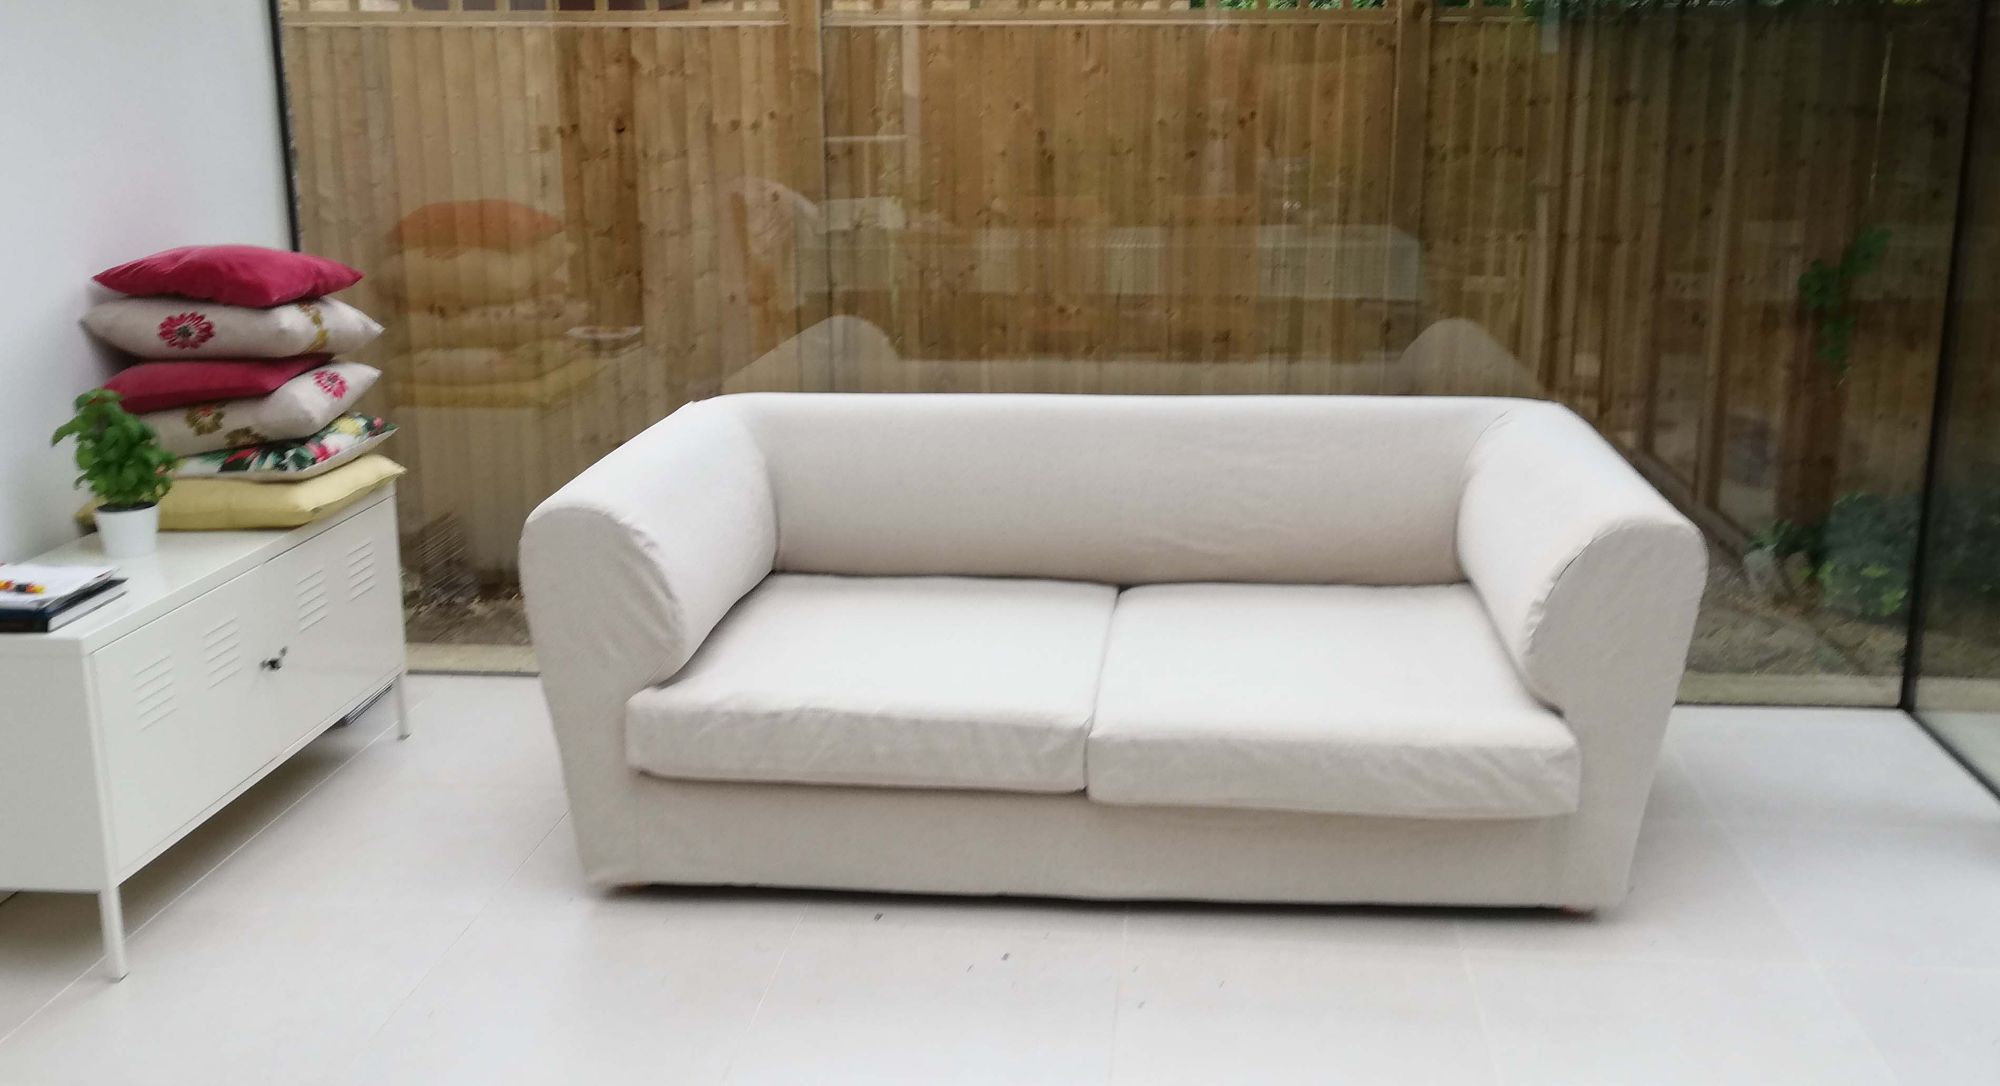 Plain tailored sofa cover